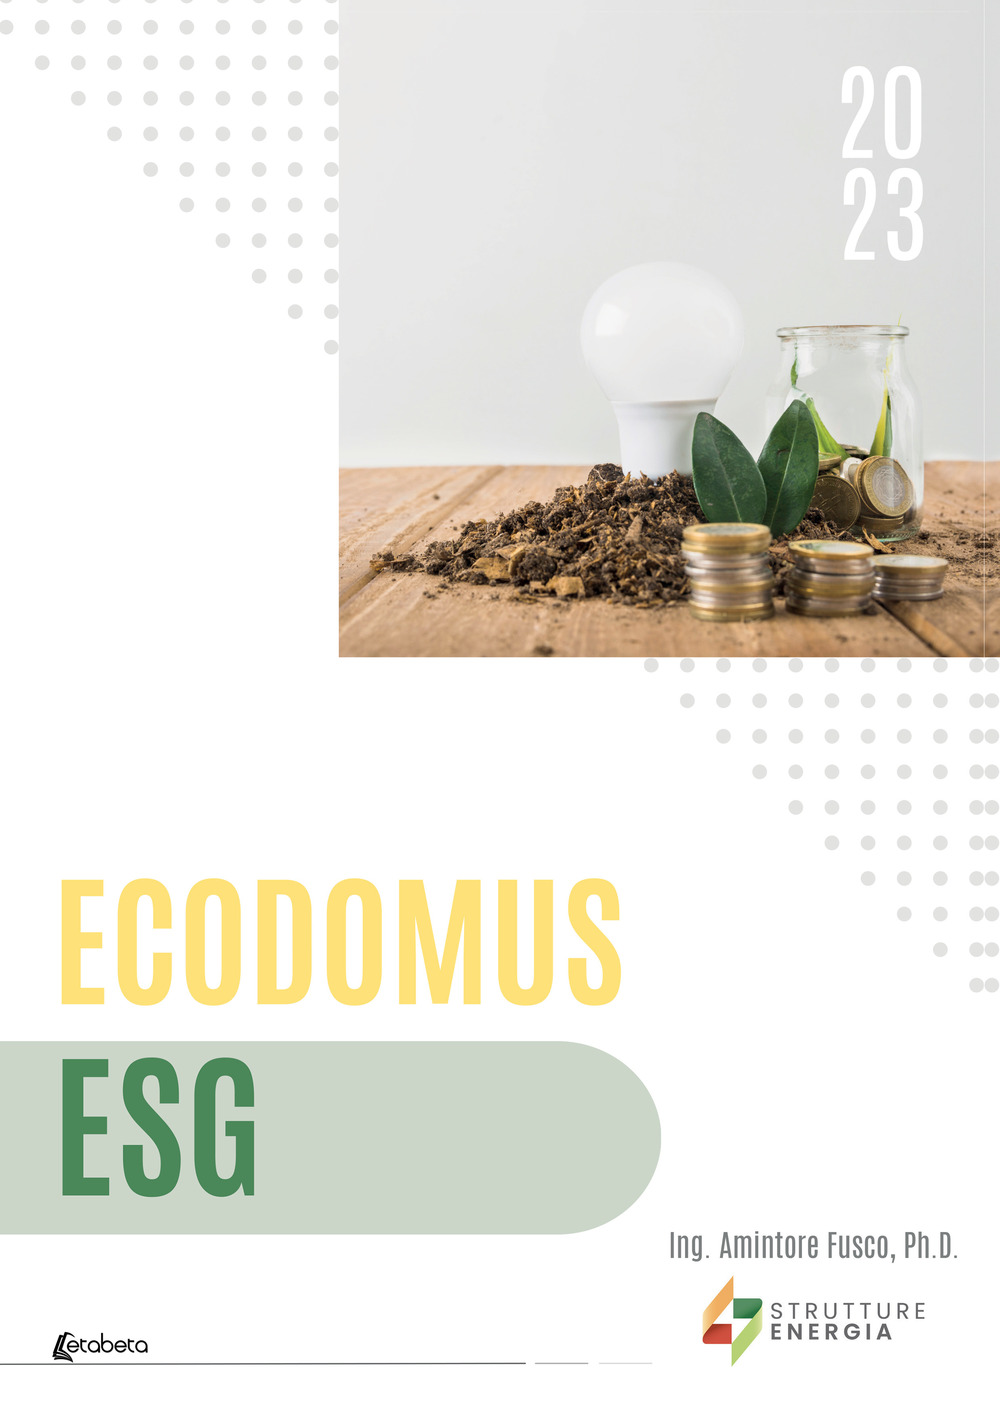 Ecodomus ESG